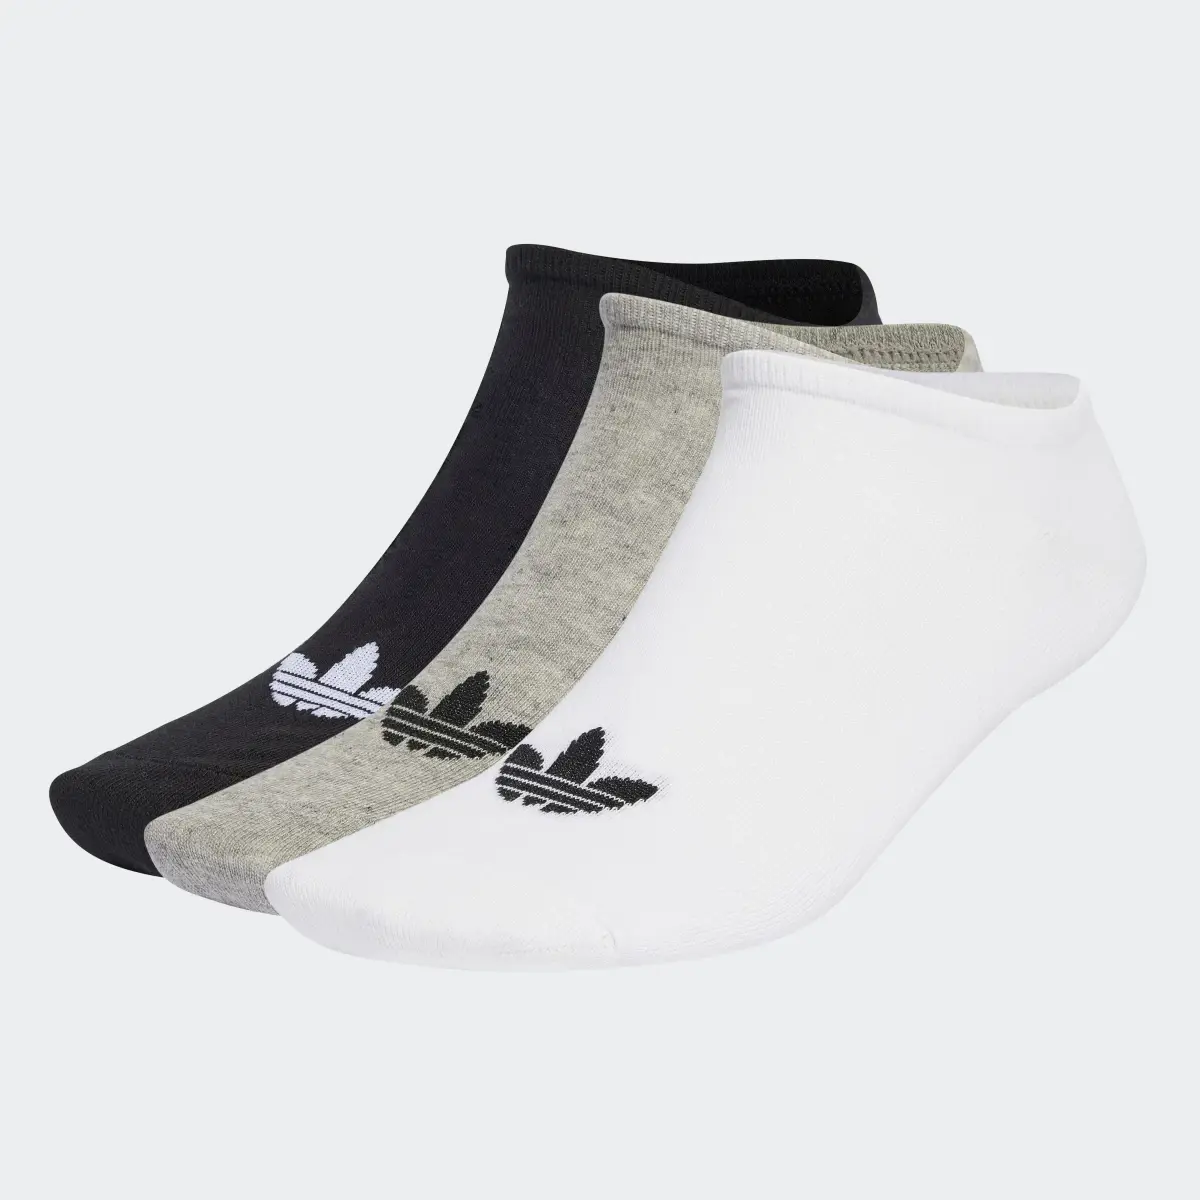 Adidas Trefoil Liner Socks 6 Pairs. 2